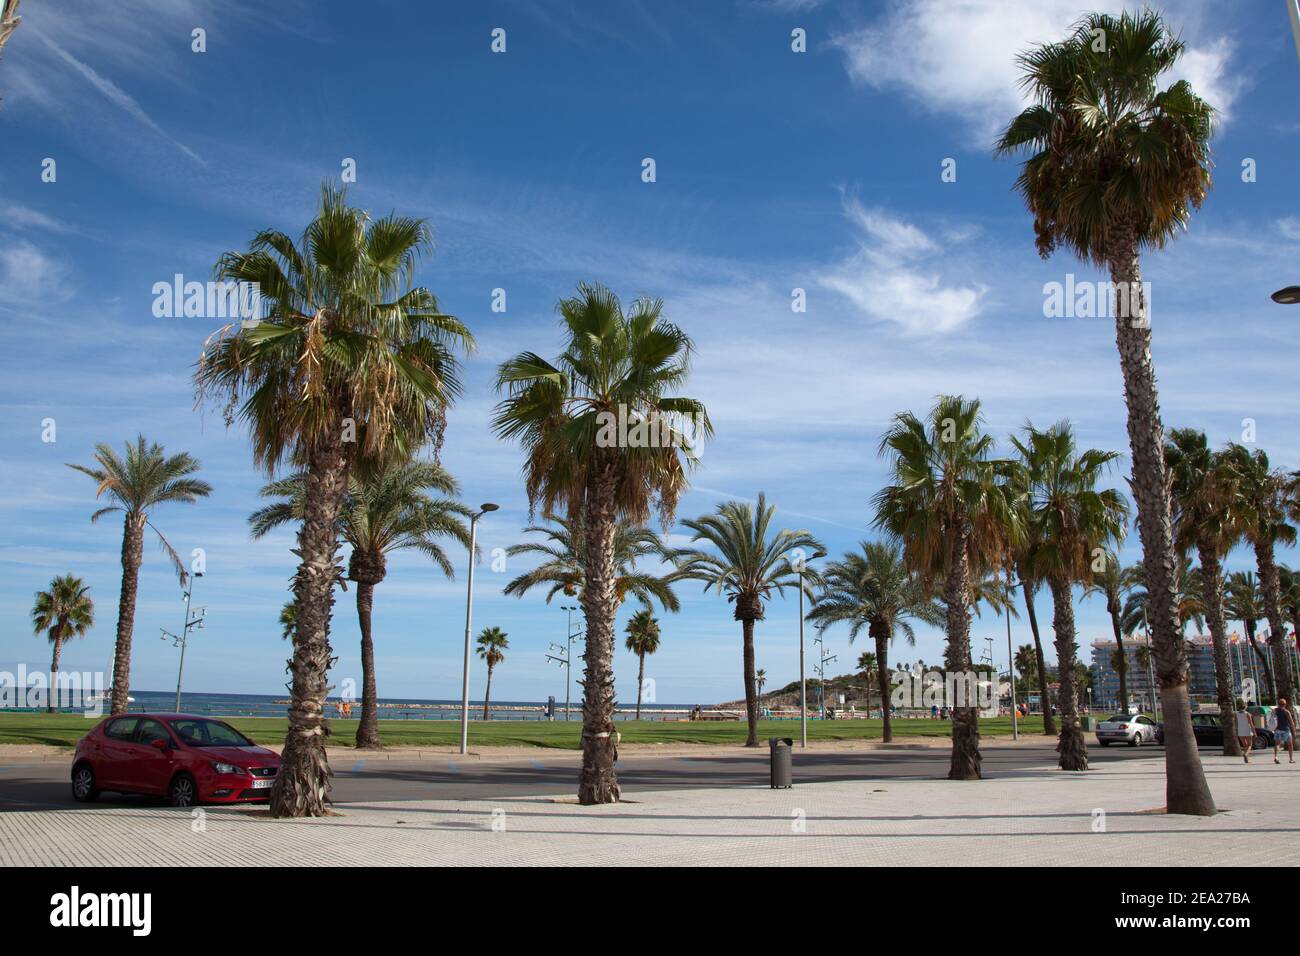 LA PINEDA, SPANIEN: Ein Damm mit Palmen liegt in der spanischen Stadt La Pineda. Stockfoto